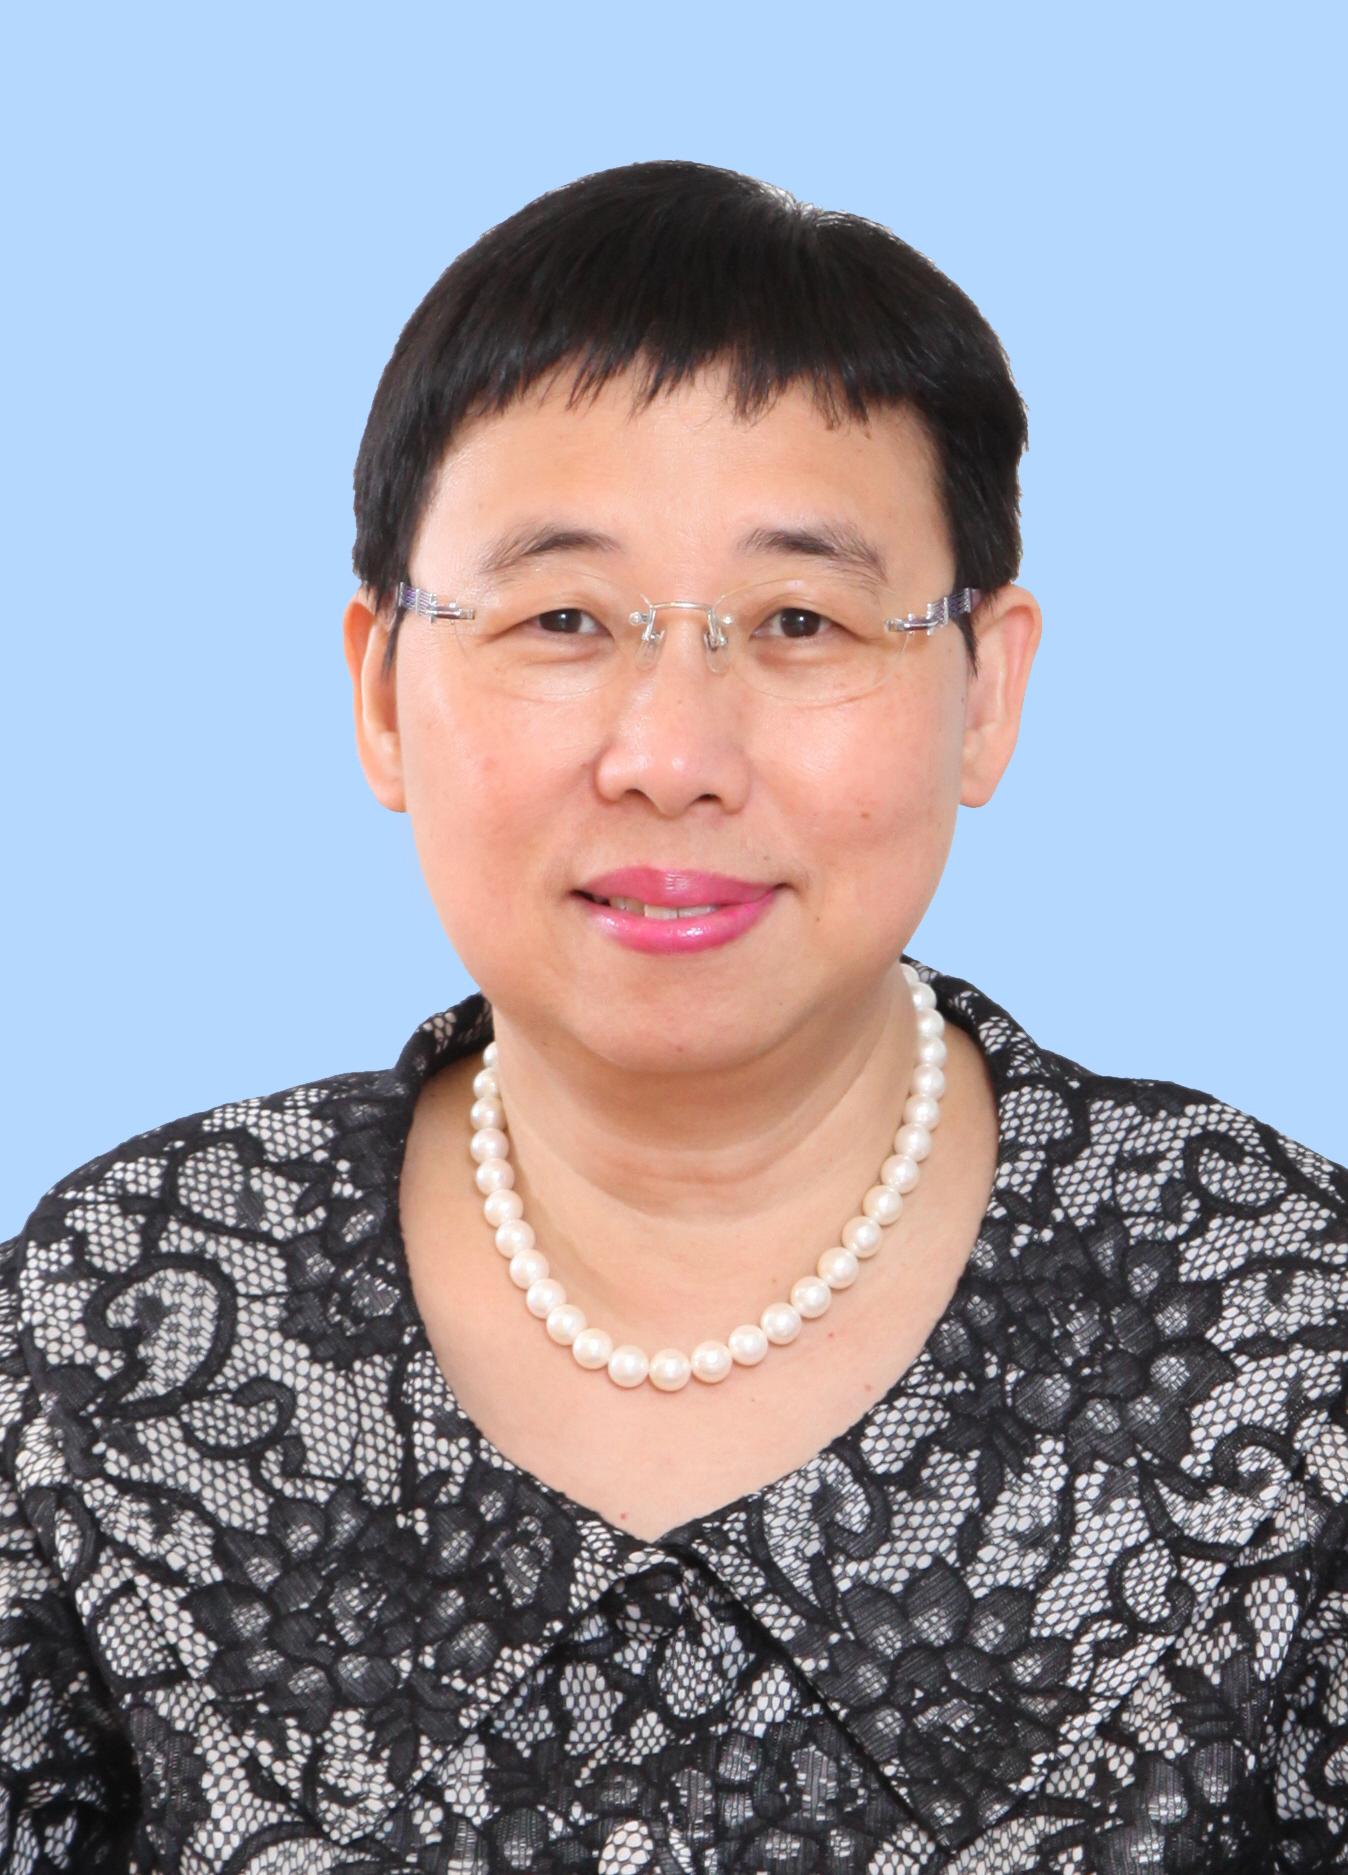 商务及经济发展局常任秘书长利敏贞将于七月开始退休前休假。